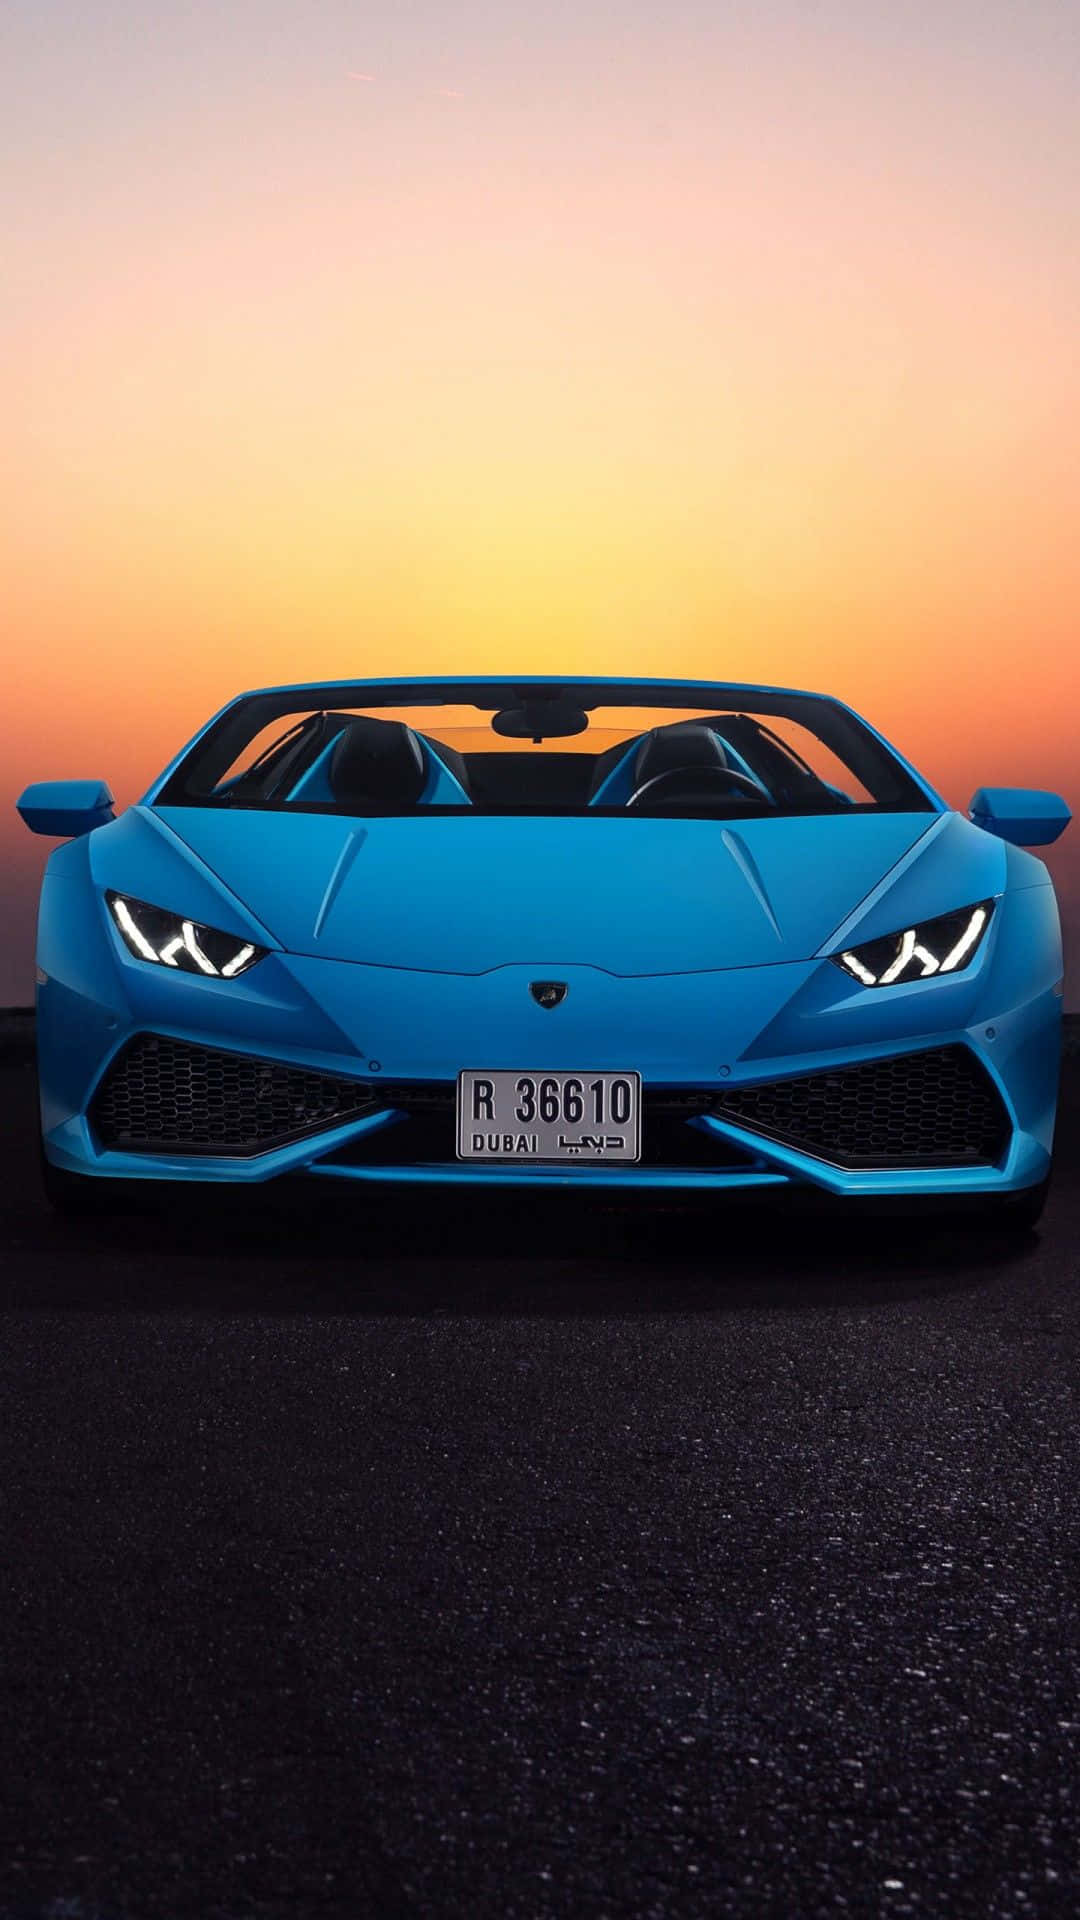 Preparatia Fare Una Crociera Di Lusso Con Questa Affascinante Lamborghini Blu! Sfondo